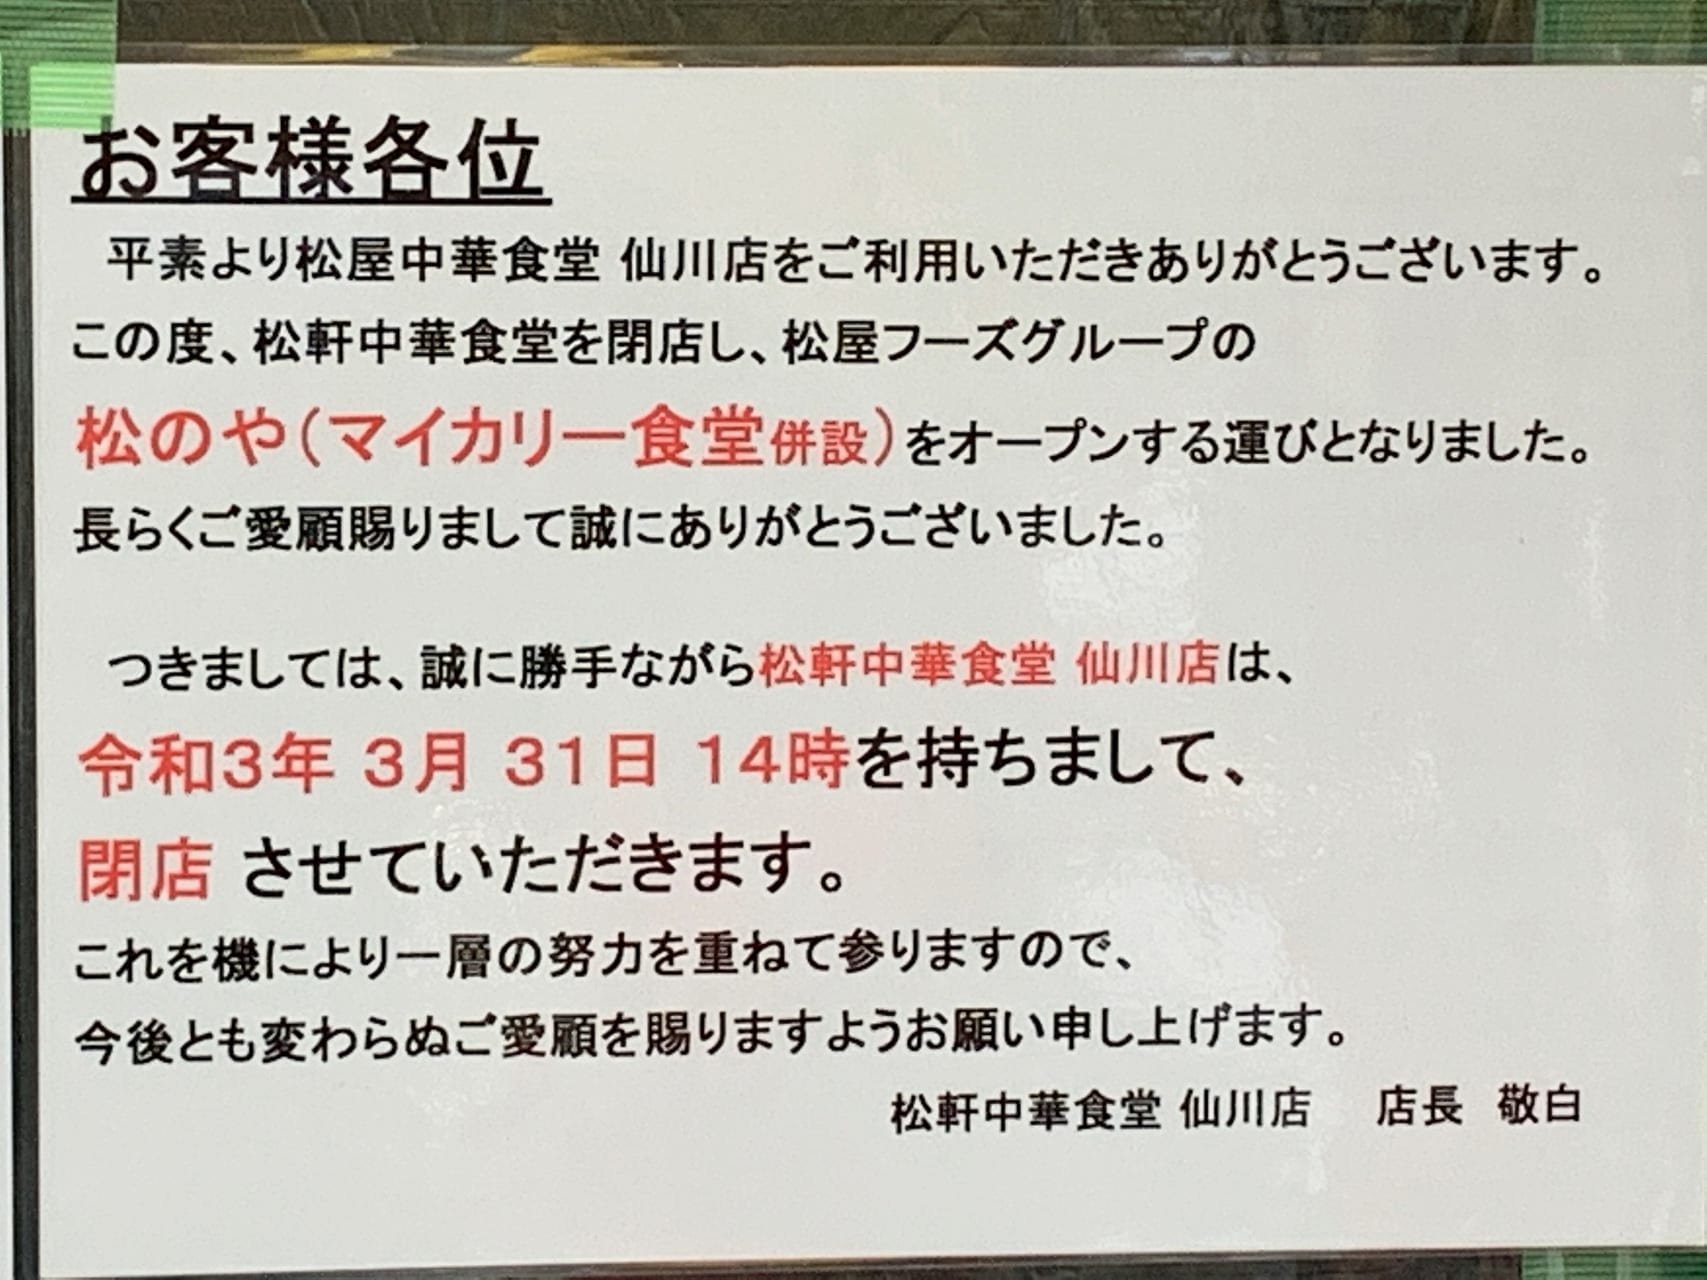 仙川商店街にある松屋中華食堂が閉店したようです